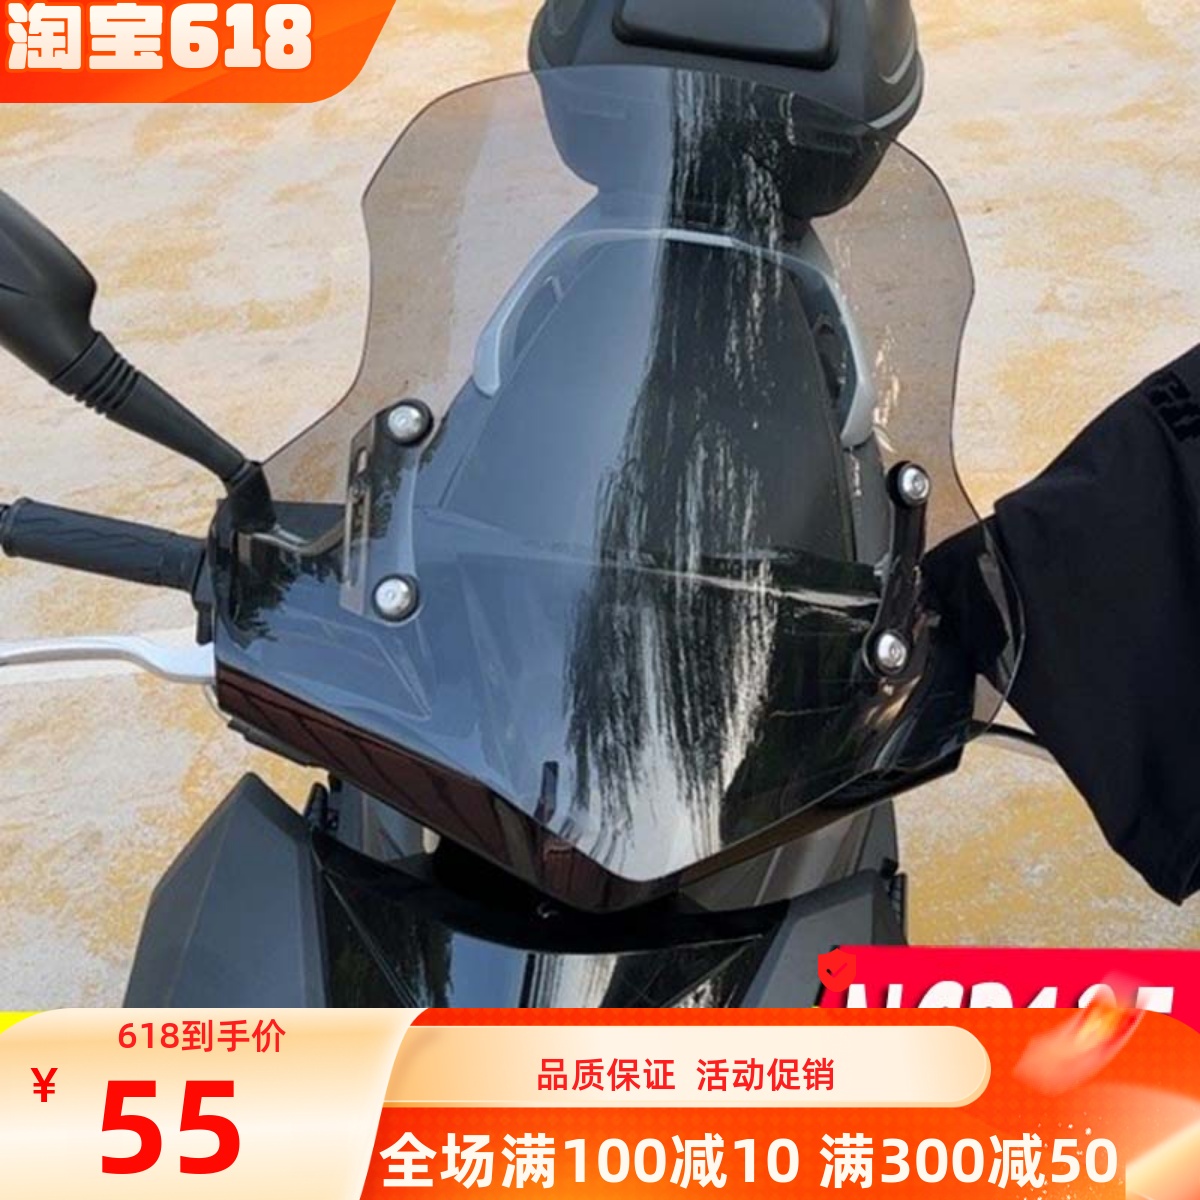 本田125踏板摩托车价格